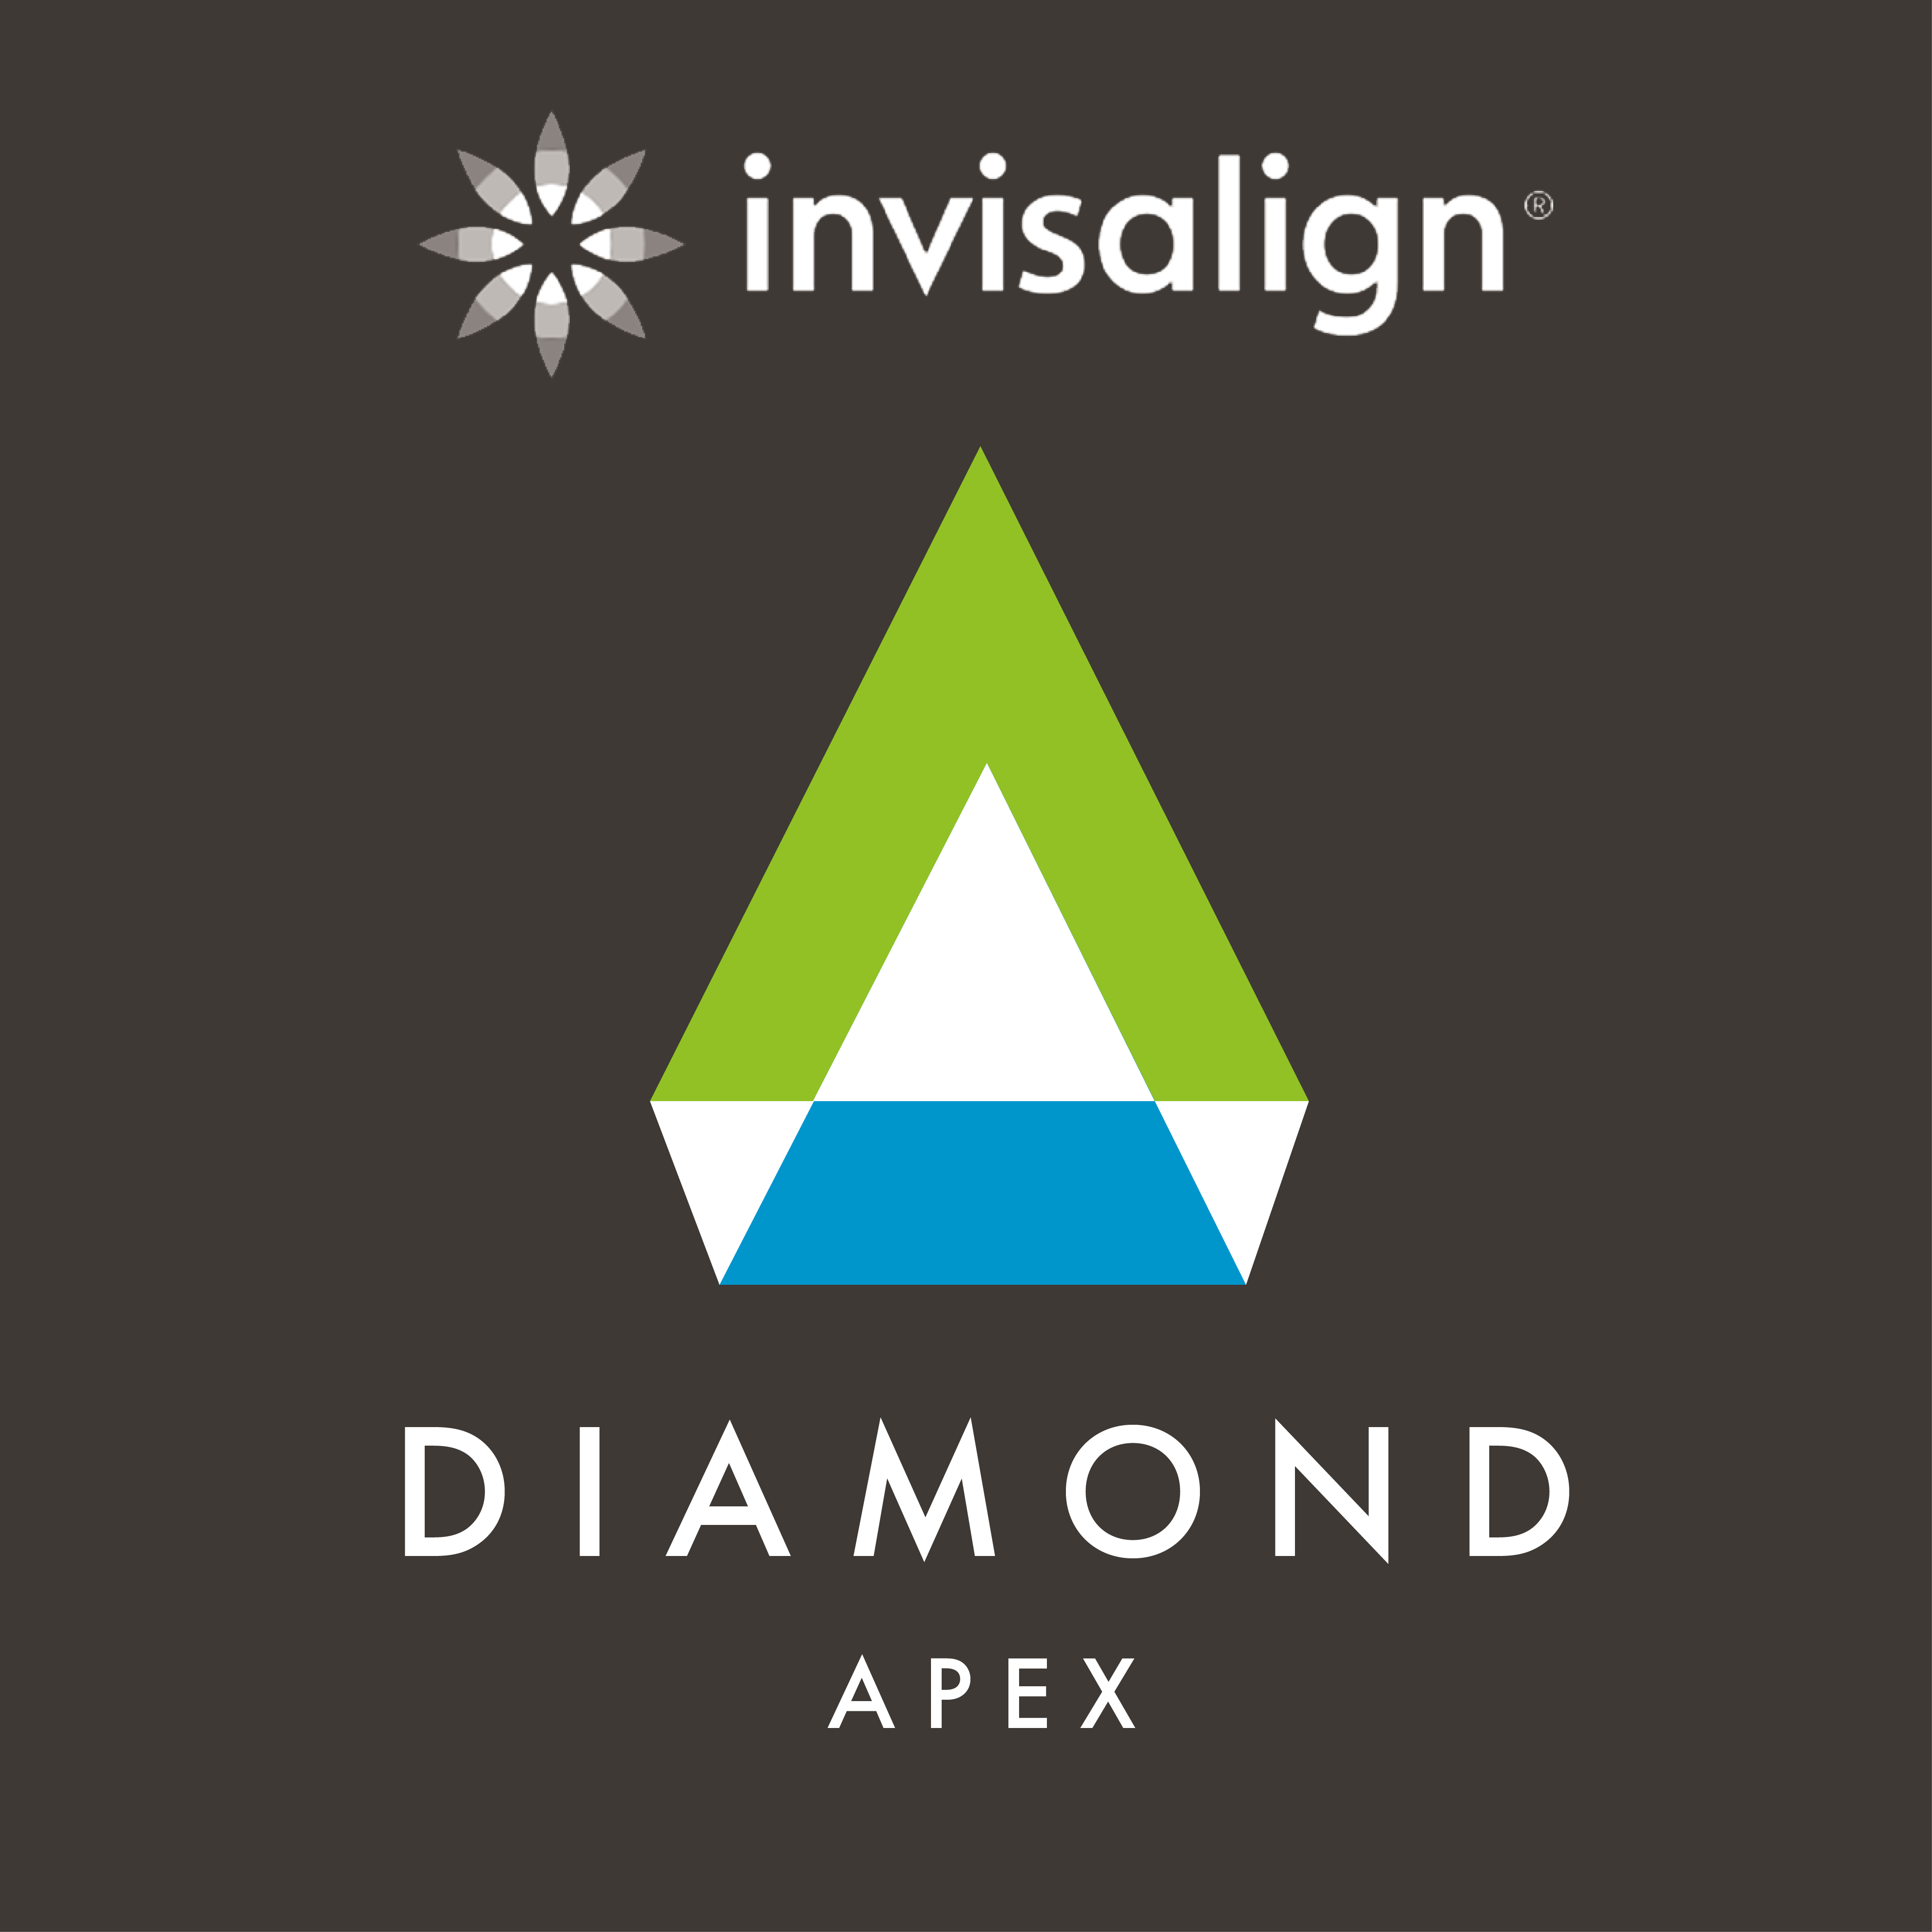 Diamond Apex Provider Invisalign